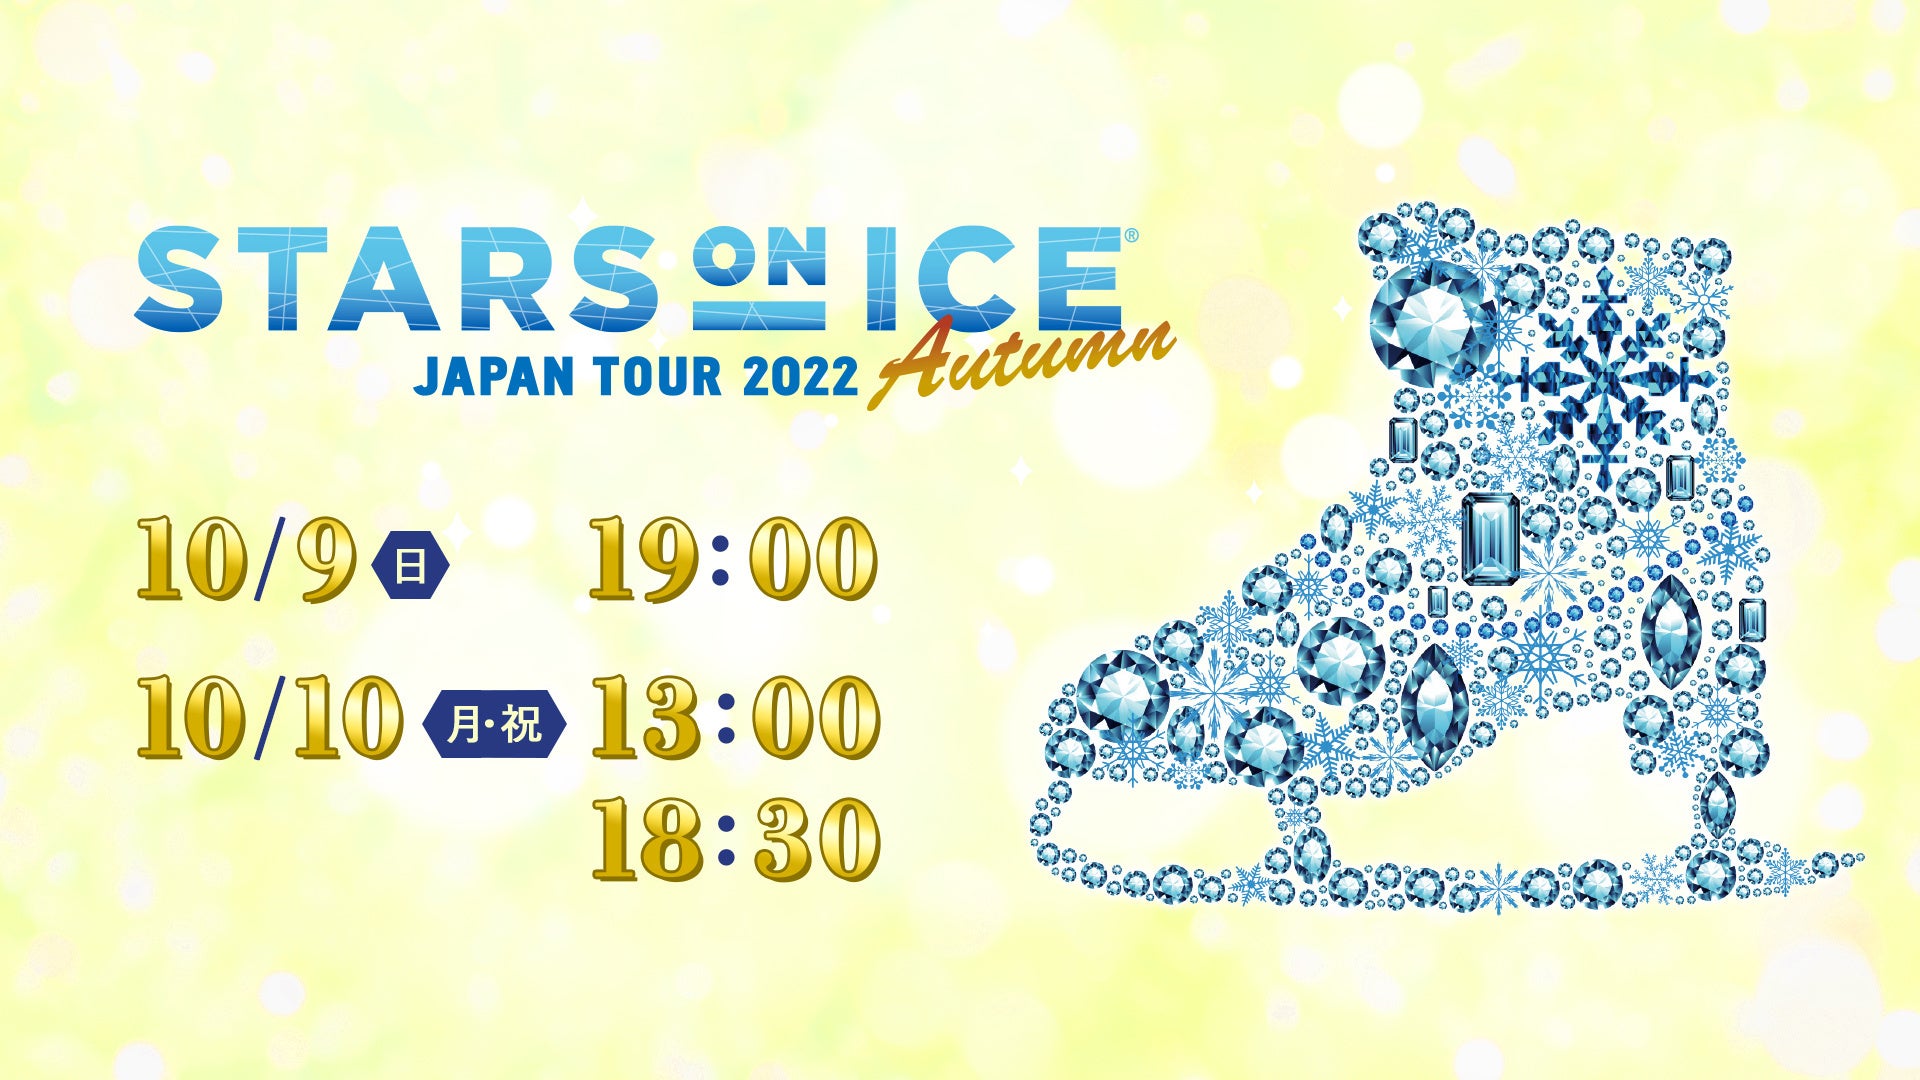 宮原知子、ルナ・ヘンドリックス、ジェフリー・バトルら夢の共演！ 世界最高峰のアイスショー『STARS ON ICE JAPAN TOUR 2022 Autumn』のサブ画像1